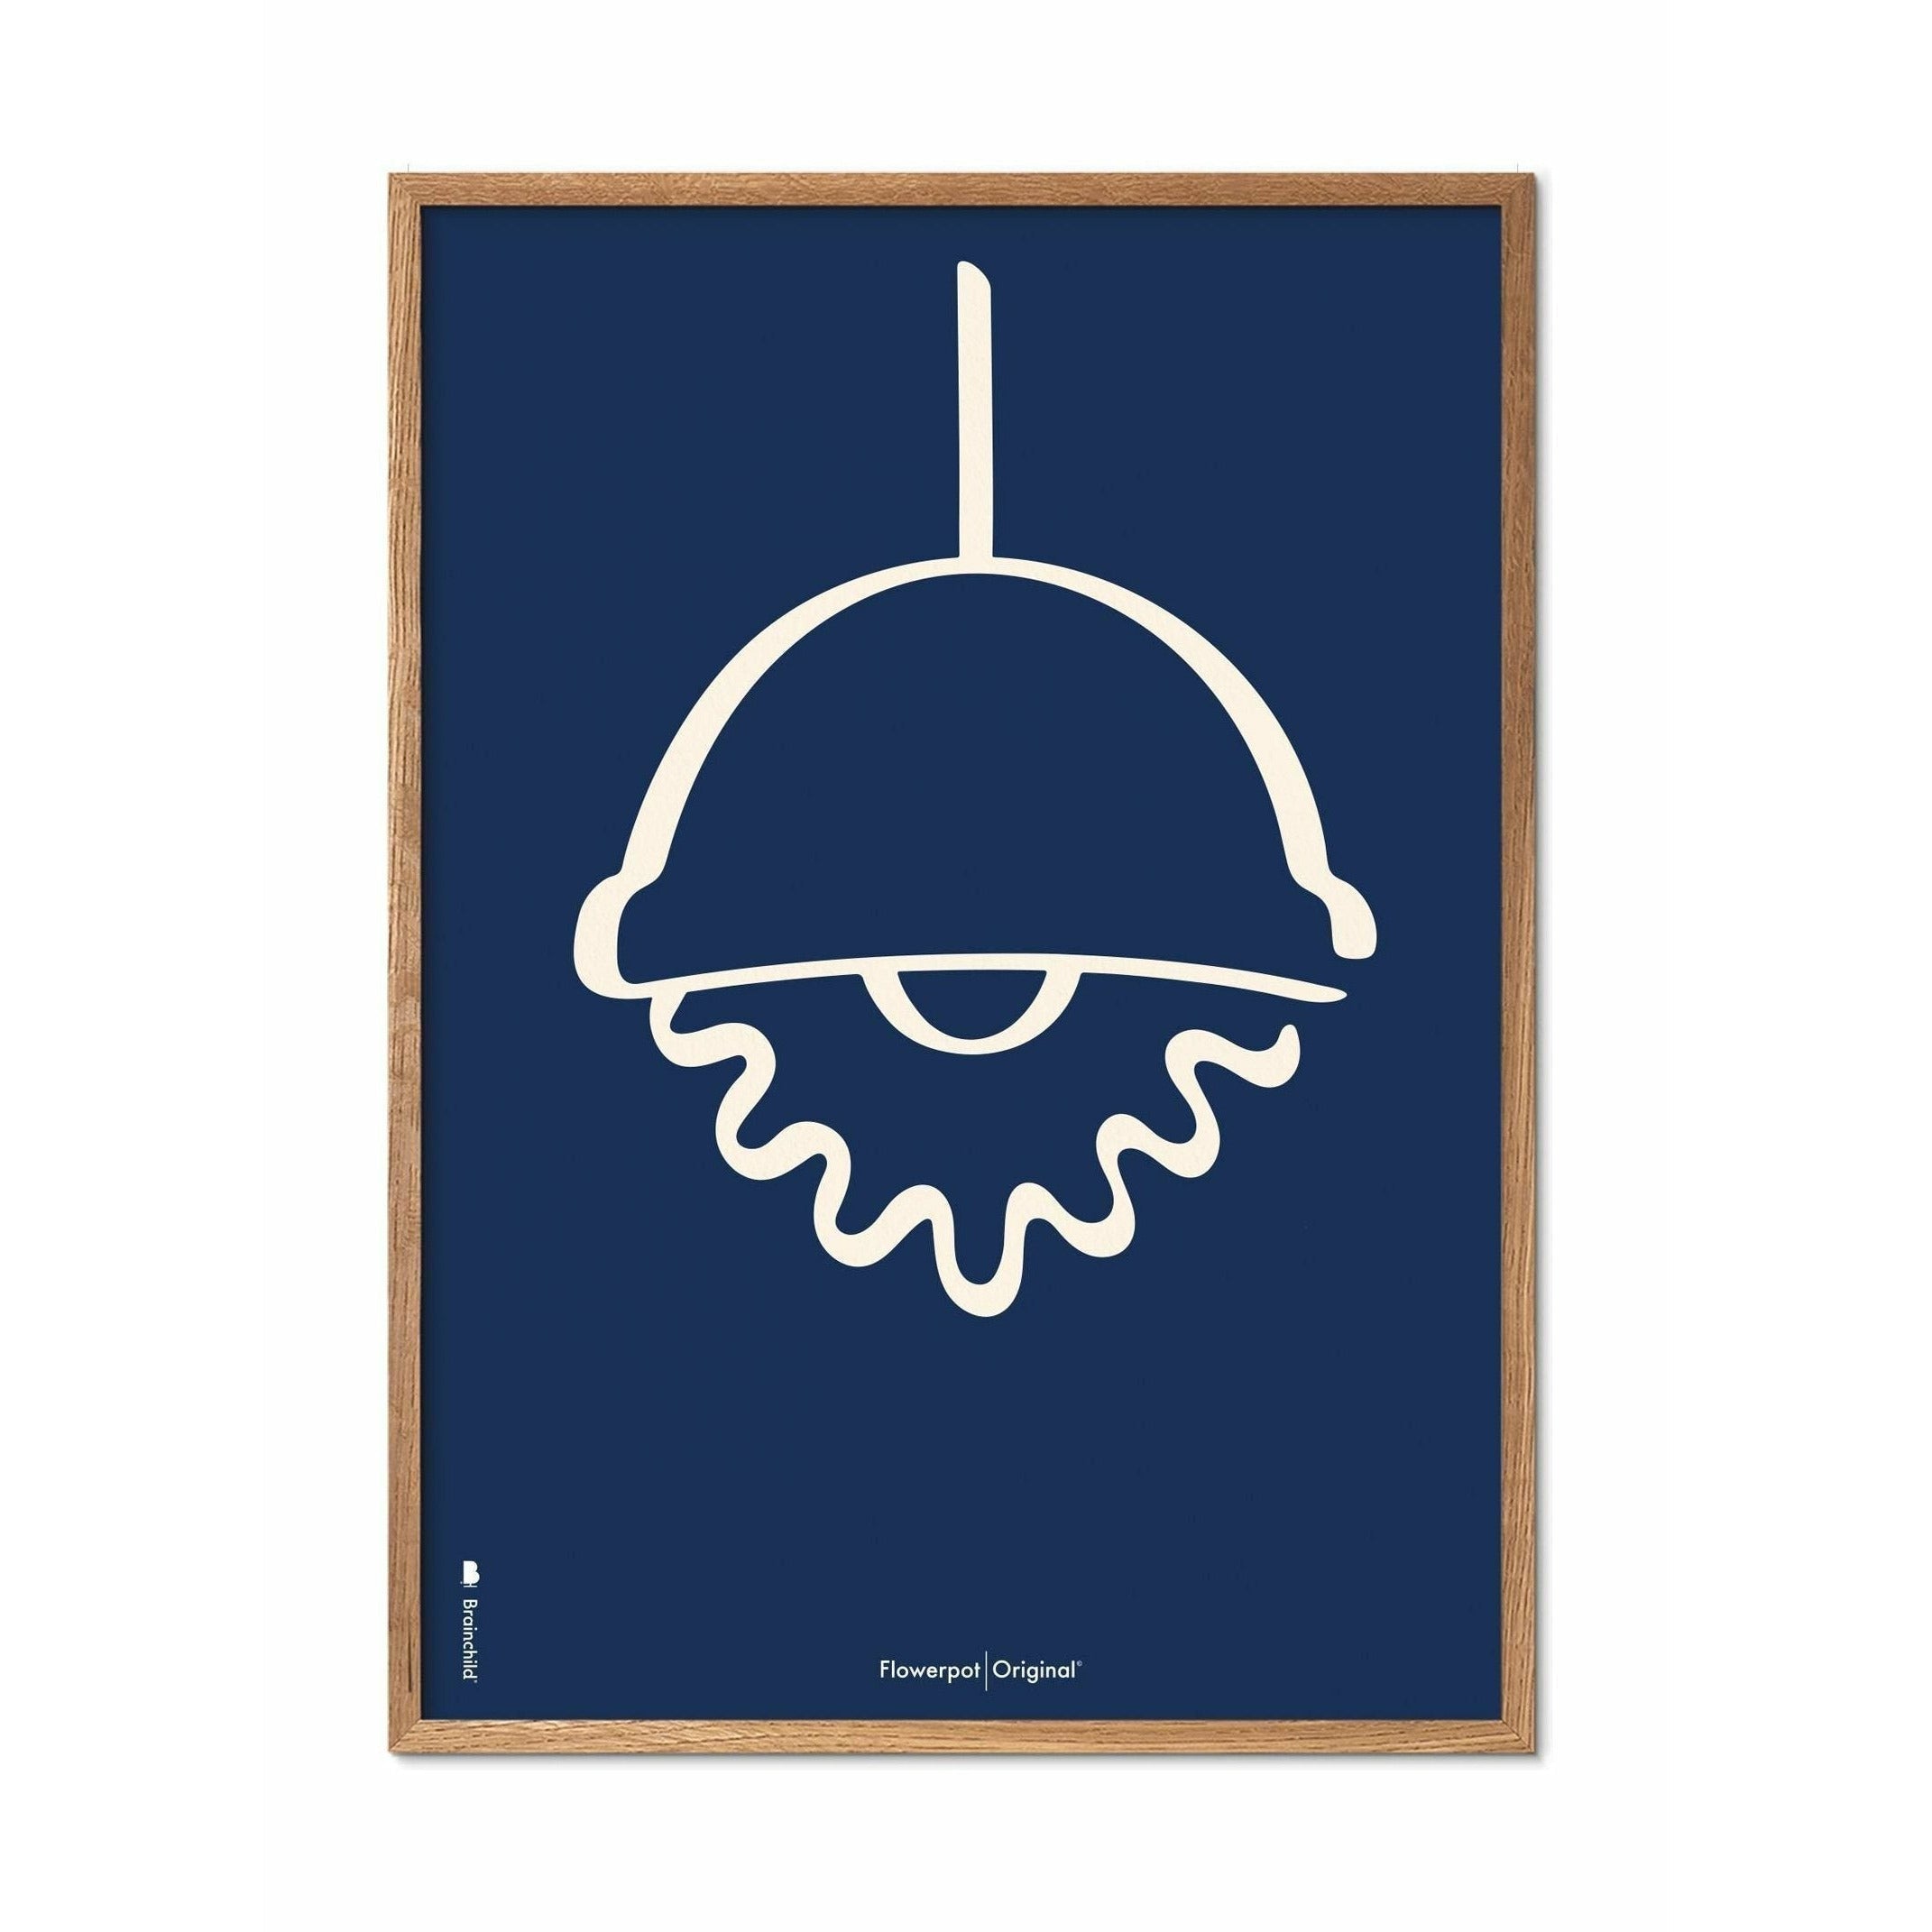 Brainchild Blumentopf Line Poster, Rahmen aus hellem Holz 30x40 Cm, blauer Hintergrund